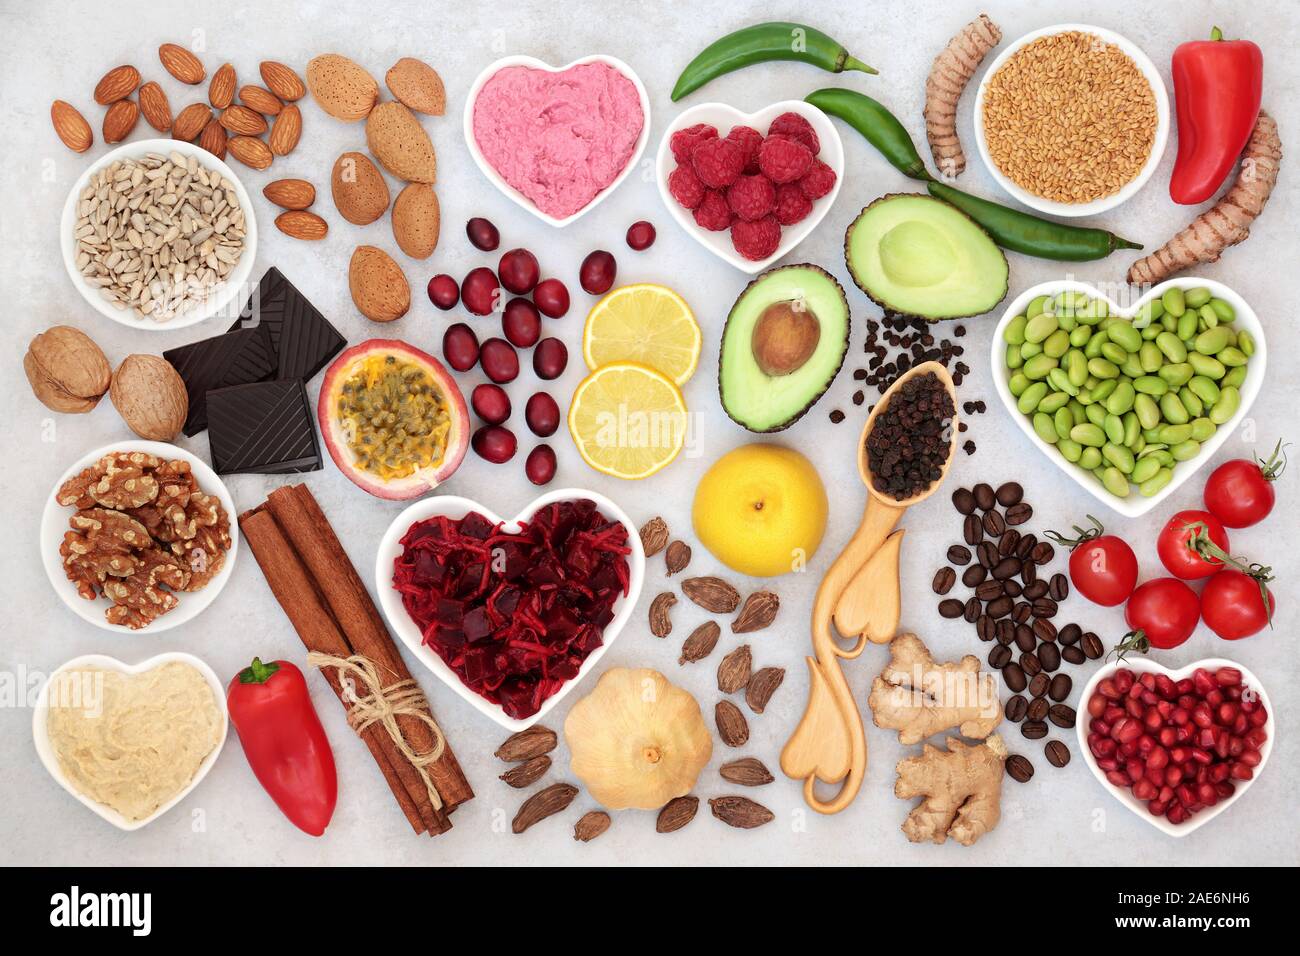 Cuore sano cibo con frutta e verdura, dadi, cali, Spezie & Erbe. La salute di alimenti ad alto contenuto di fibra, antiossidanti, vitamine, omega 3 e proteine. Foto Stock